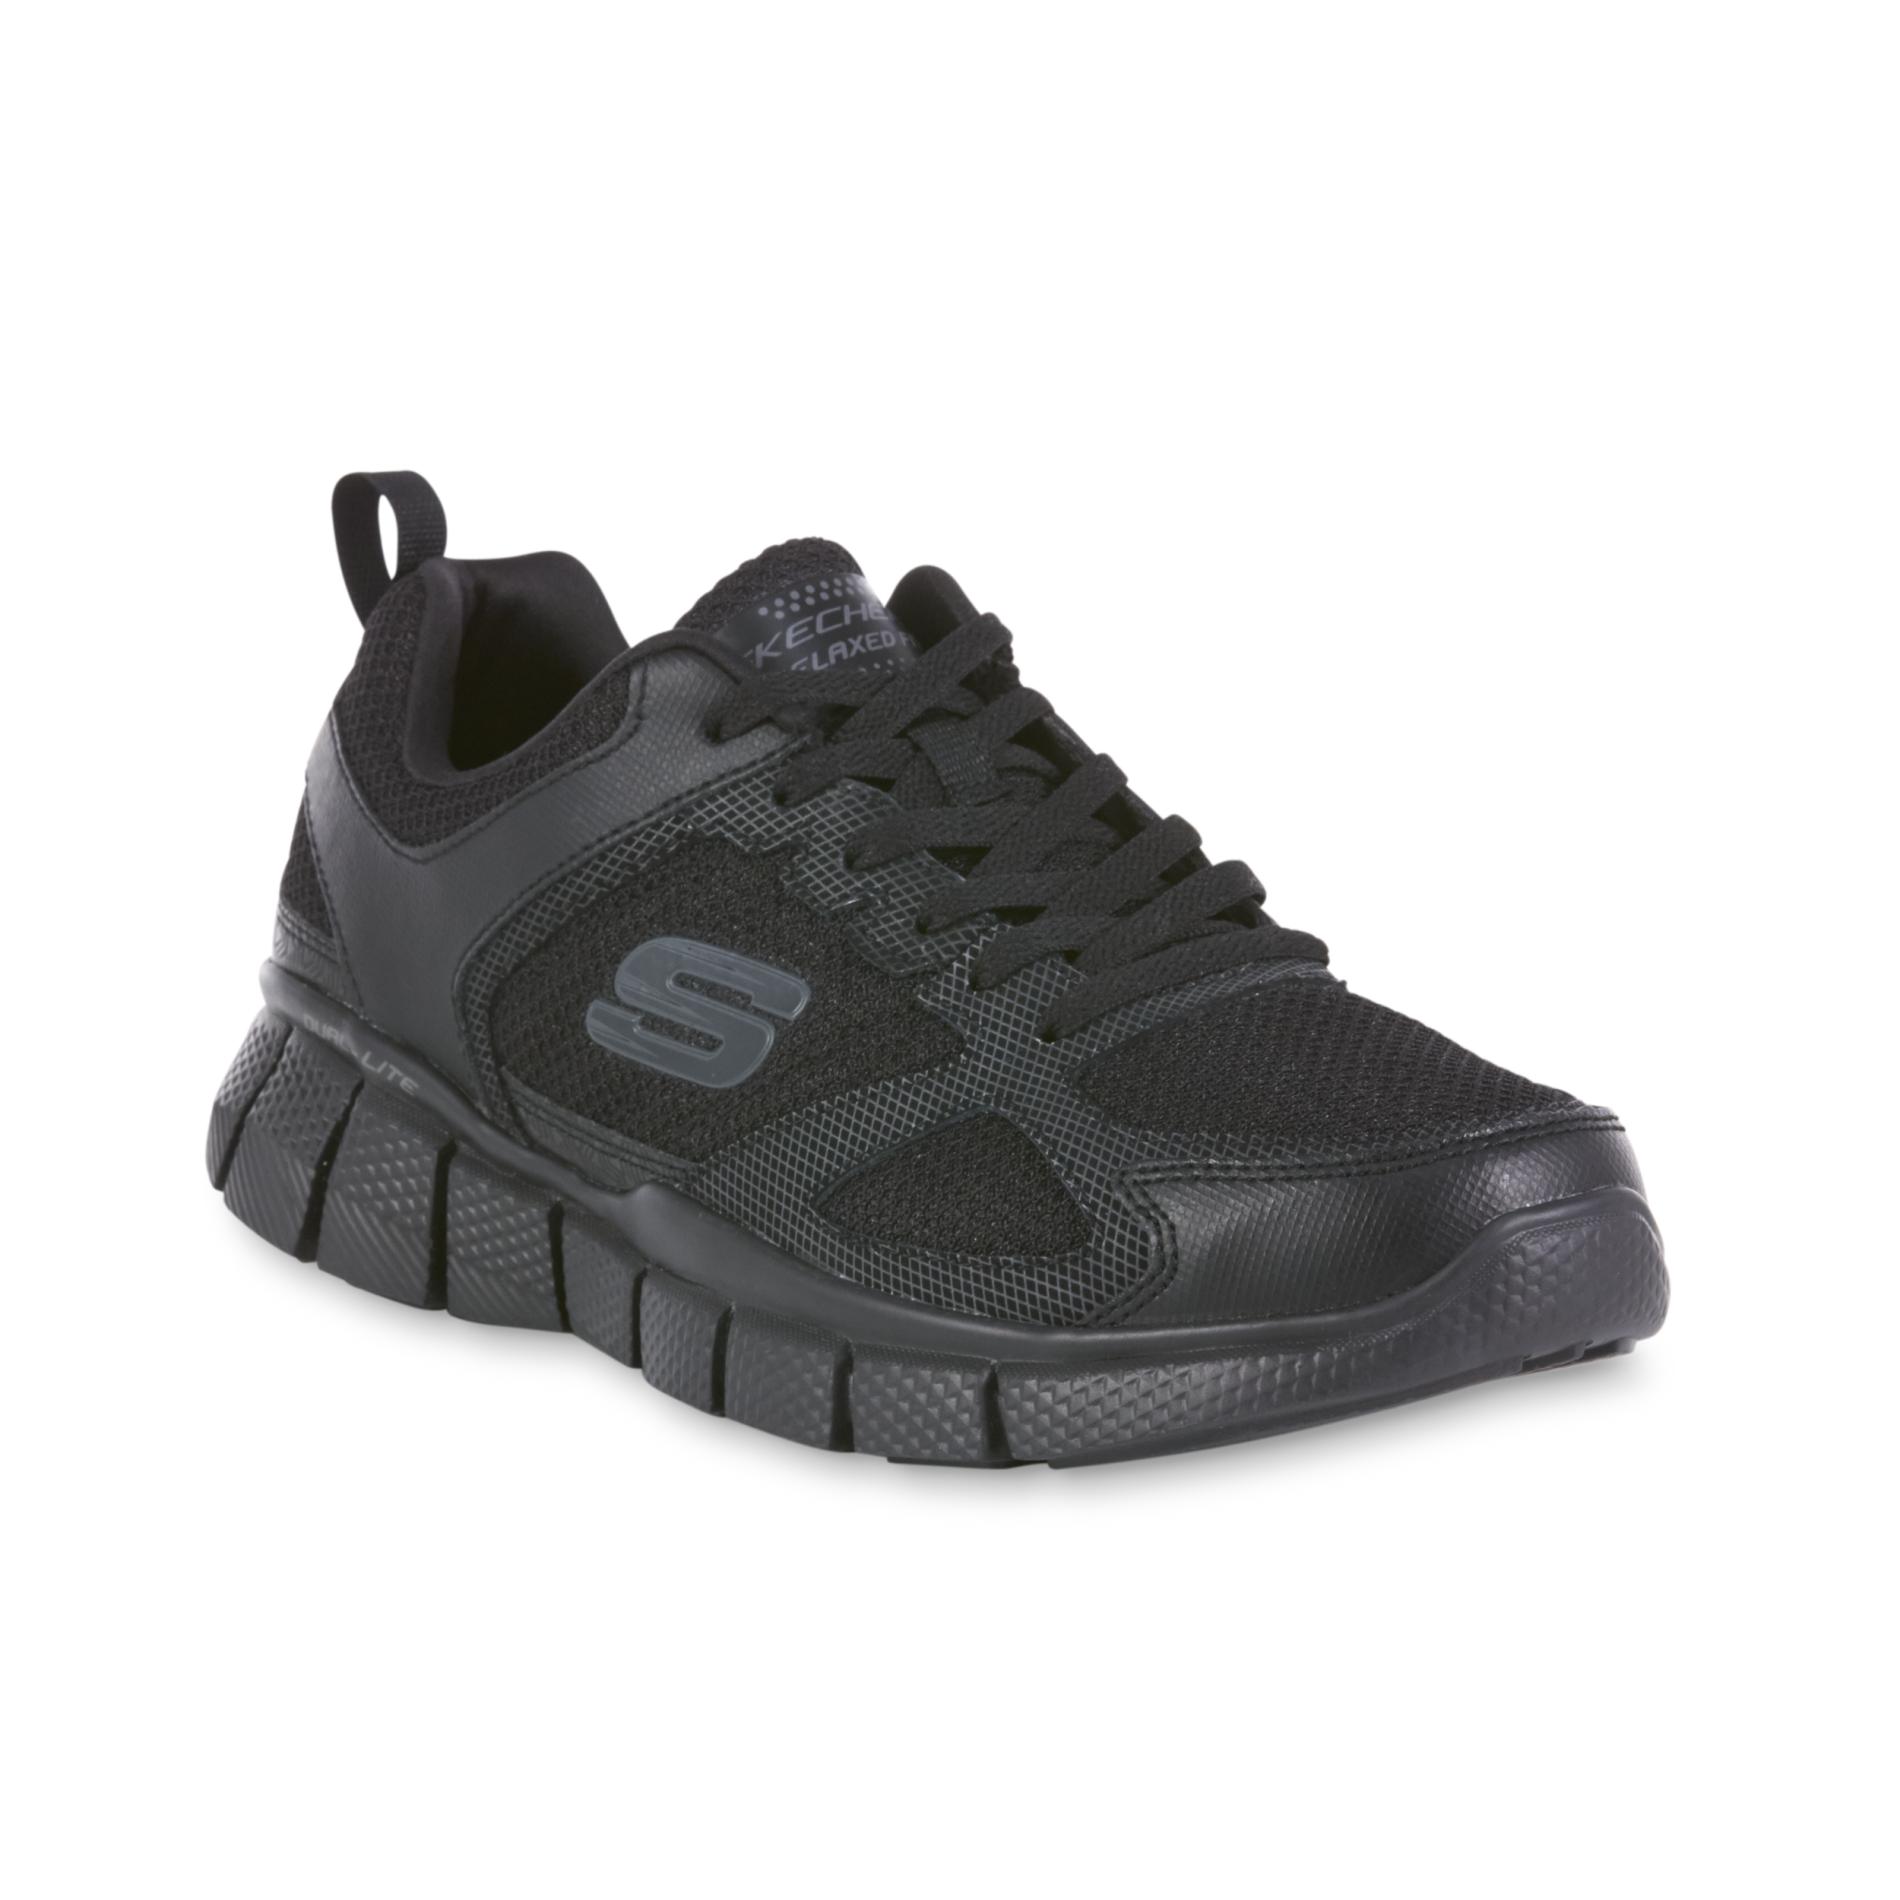 Skechers Shoes - Sears